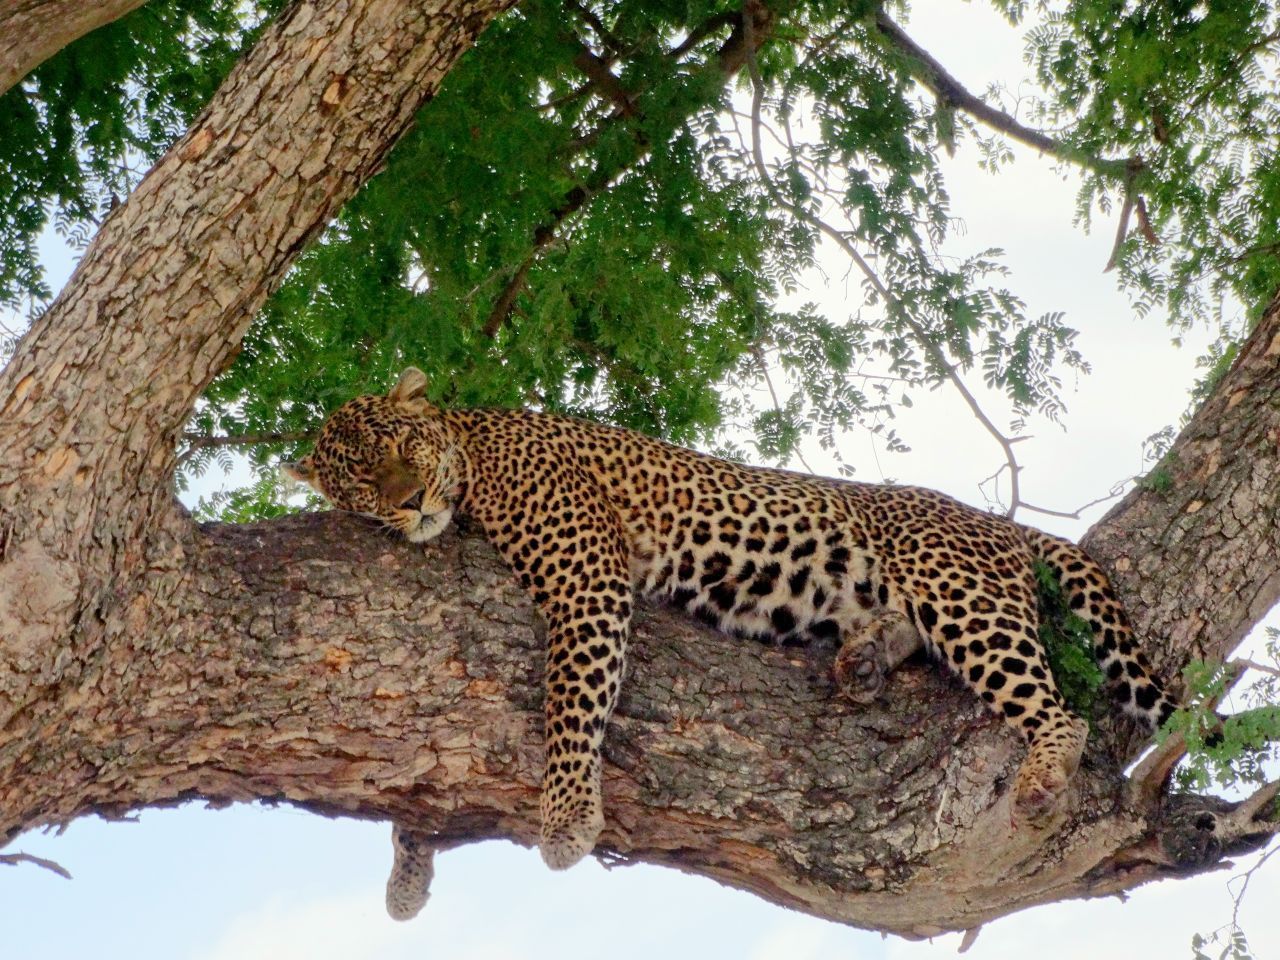 Besonders wohl fühlen sich Leoparden auf Bäumen. Dorthin bringen sie oft ihre erlegte Beute - und halten auch gern mal ein Nickerchen. 